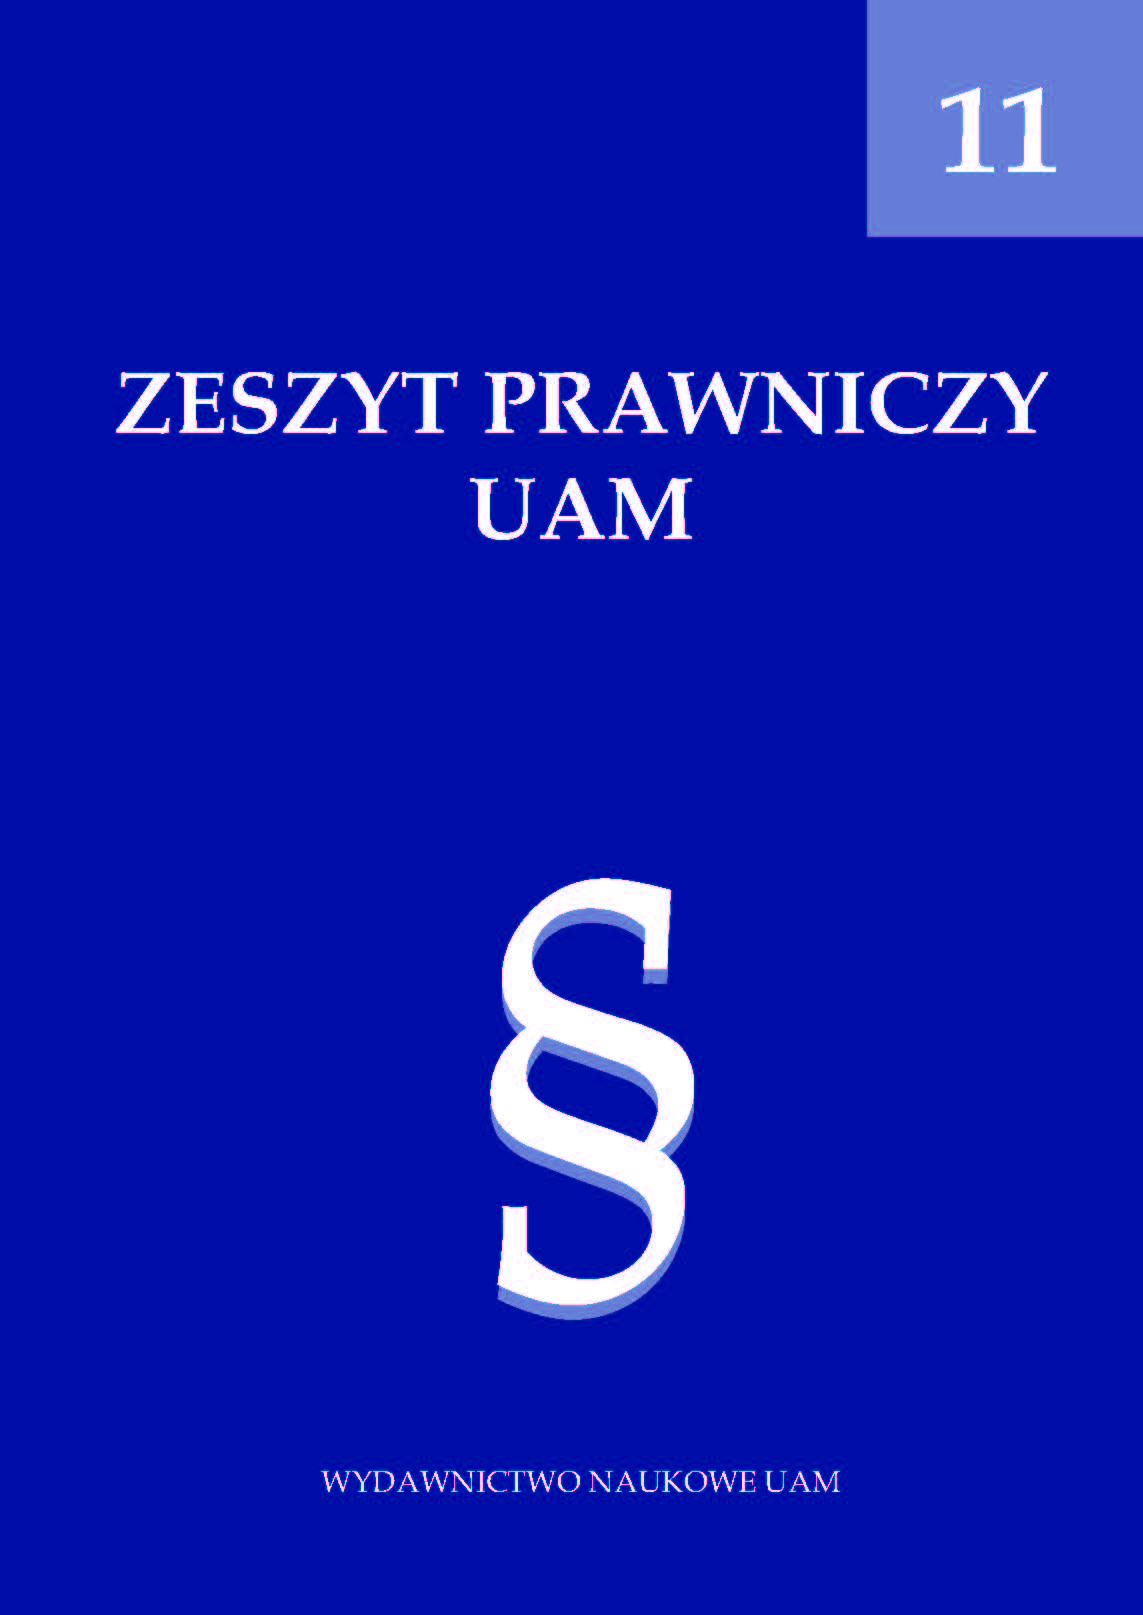 Adam Mickiewicz University Law Journal